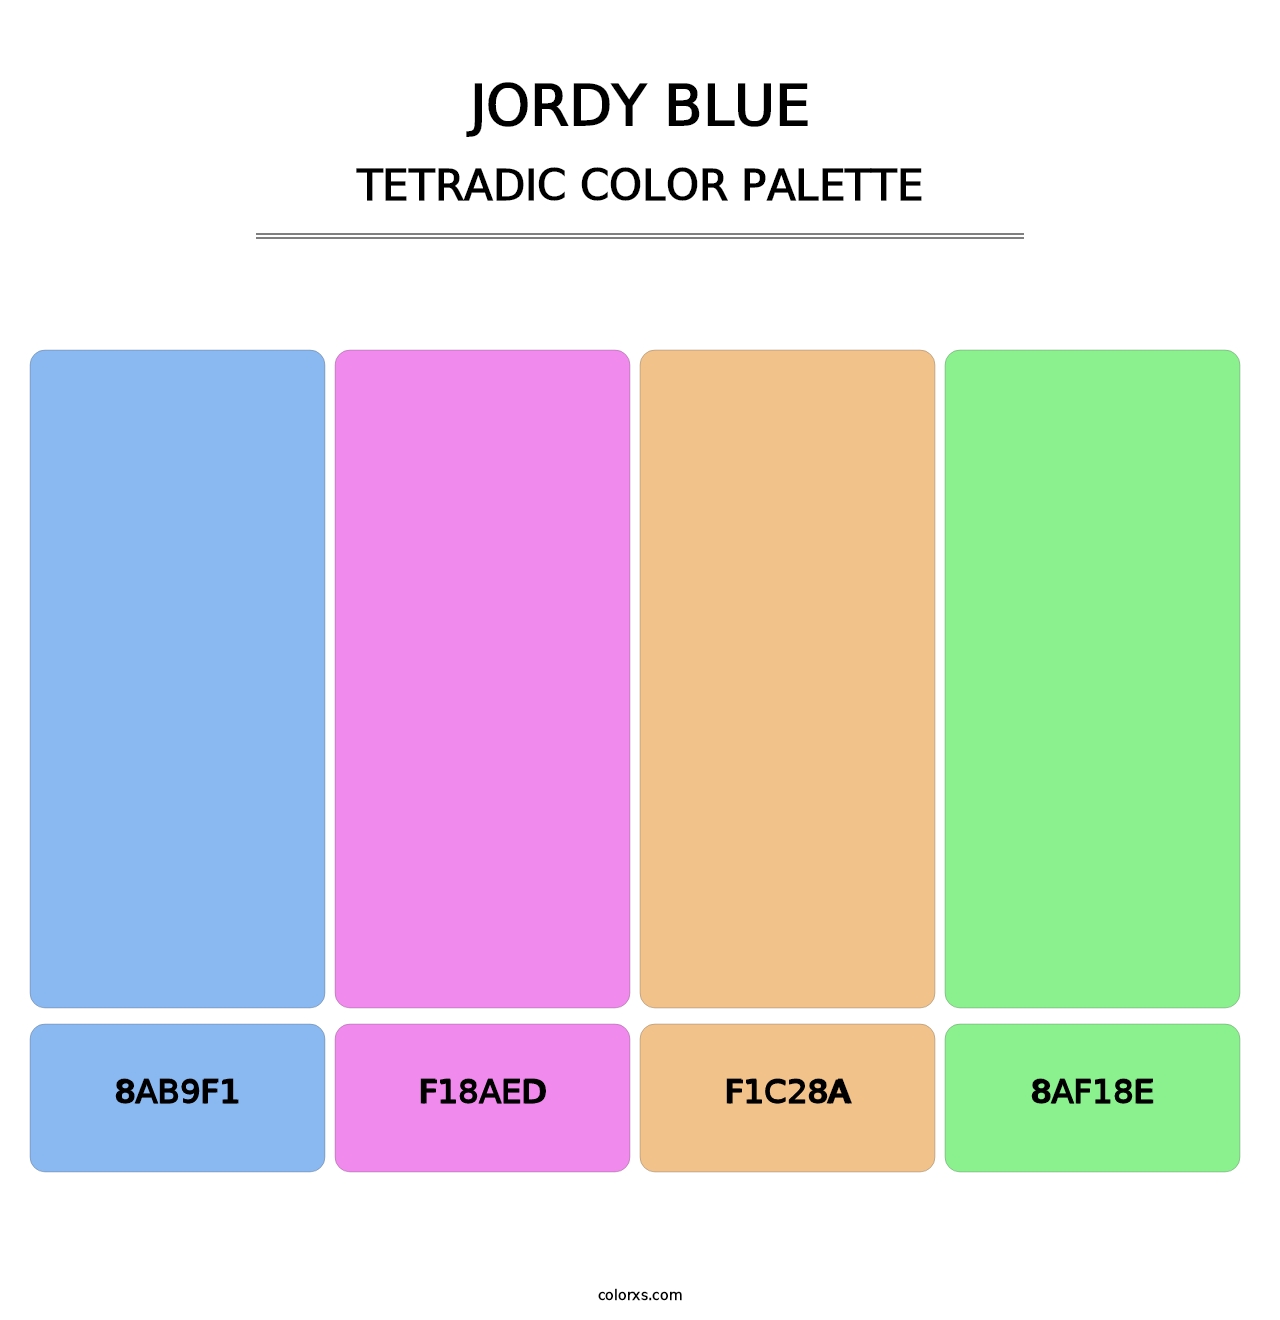 Jordy Blue - Tetradic Color Palette